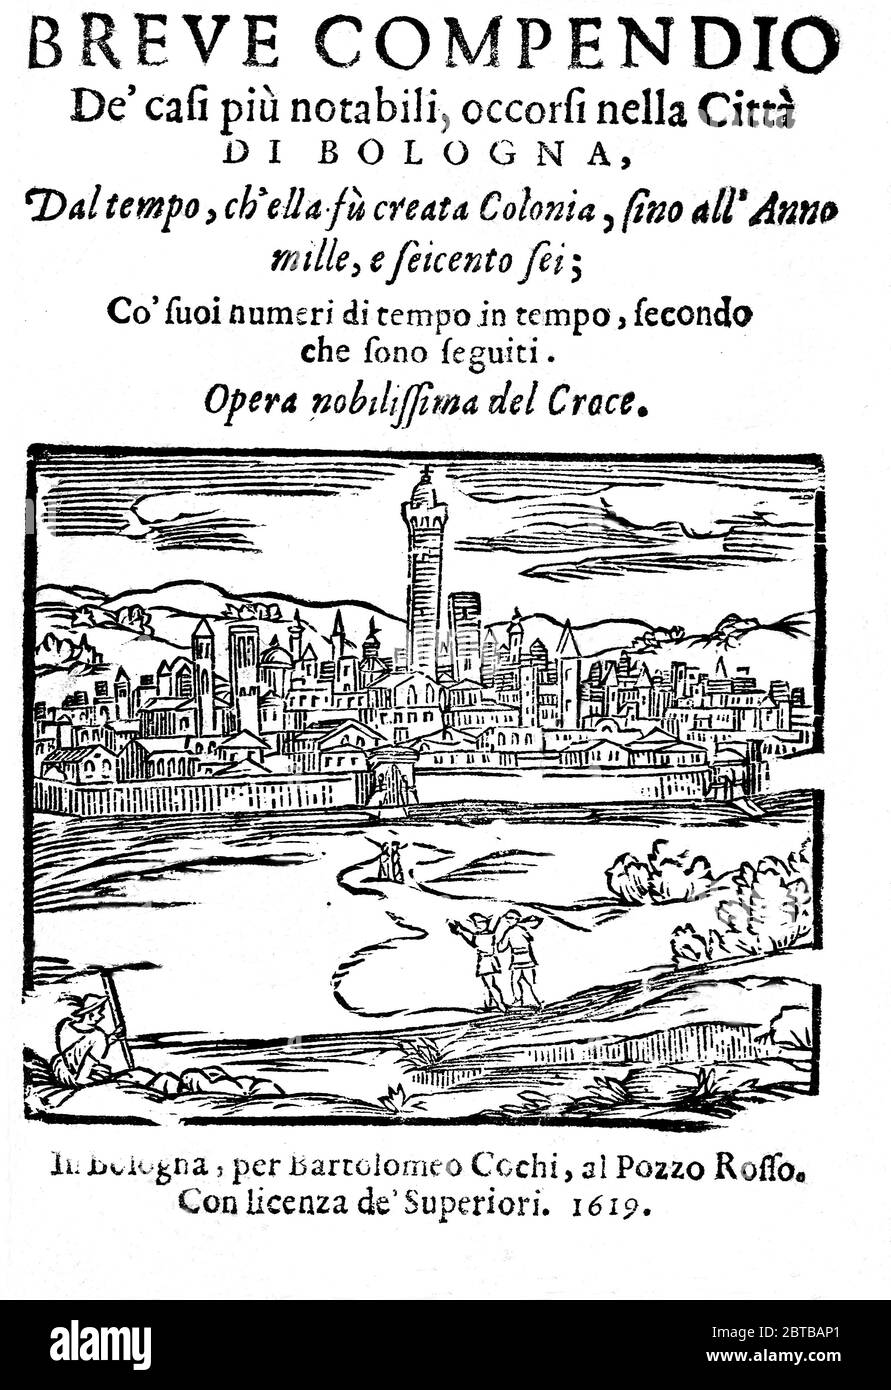 1619, Bologna , ITALIA : il poeta , astrologo , attore e produttore , cantastoria e enigma scrittore GIULIO CESARE CROCE ( 1550 - 1609 ). Autore di serie su BERTOLDO , BERTOLDINO e CACASENNO . Pagina iniziale del libro BREVE COMPENDIO DE' CASI PIU' NOTABILI OCCORSI NELLA CITTA' DI BOLOGNA di G.C. Croce, stampata a Bologna , 1619 .- POETI ITALIANI - '500 - 500'S - CANTASTORIE - ATTORE - TEATRO - TEATRO - SCRITTORE - LETTERATURA - LETTERATURA - LETTERATO - POETA - POESIA - POESIA - ASTROLOGO - ASTROLOGIA - ASTROLOGIA - INCISIONE - RITRATTO - RITRATTO - ENIGMISTA - LINGUA ITALIANA - ITALIANO L. Foto Stock